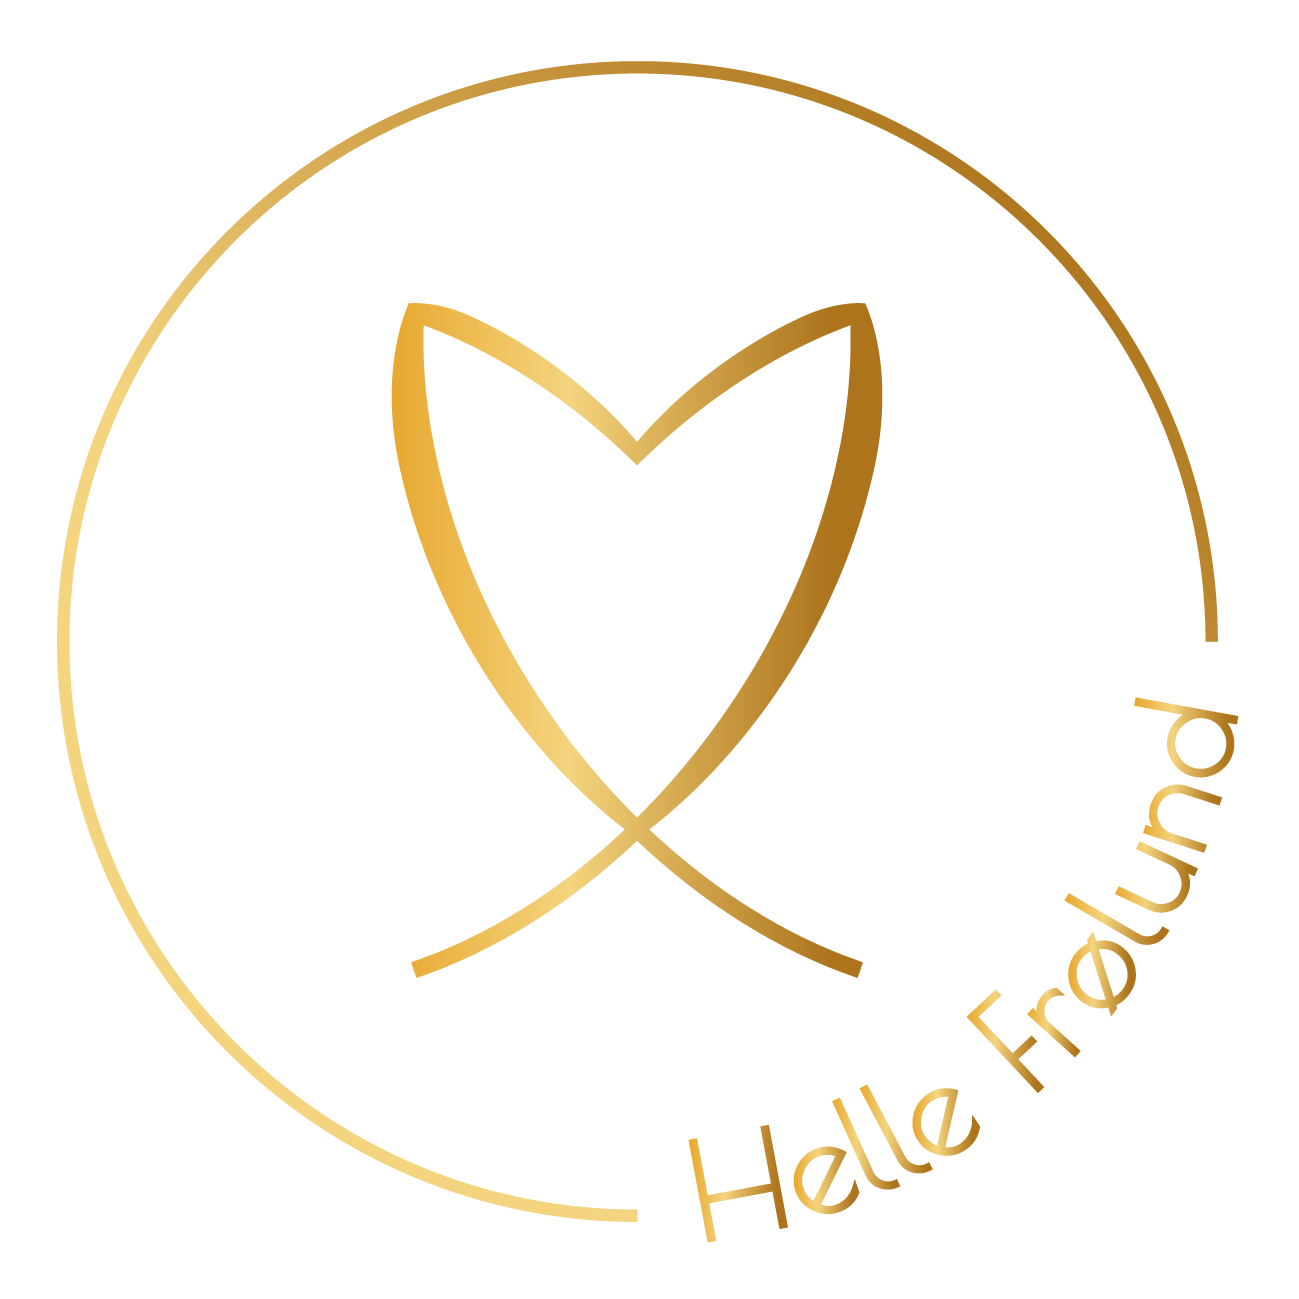 Helle Frølund logo